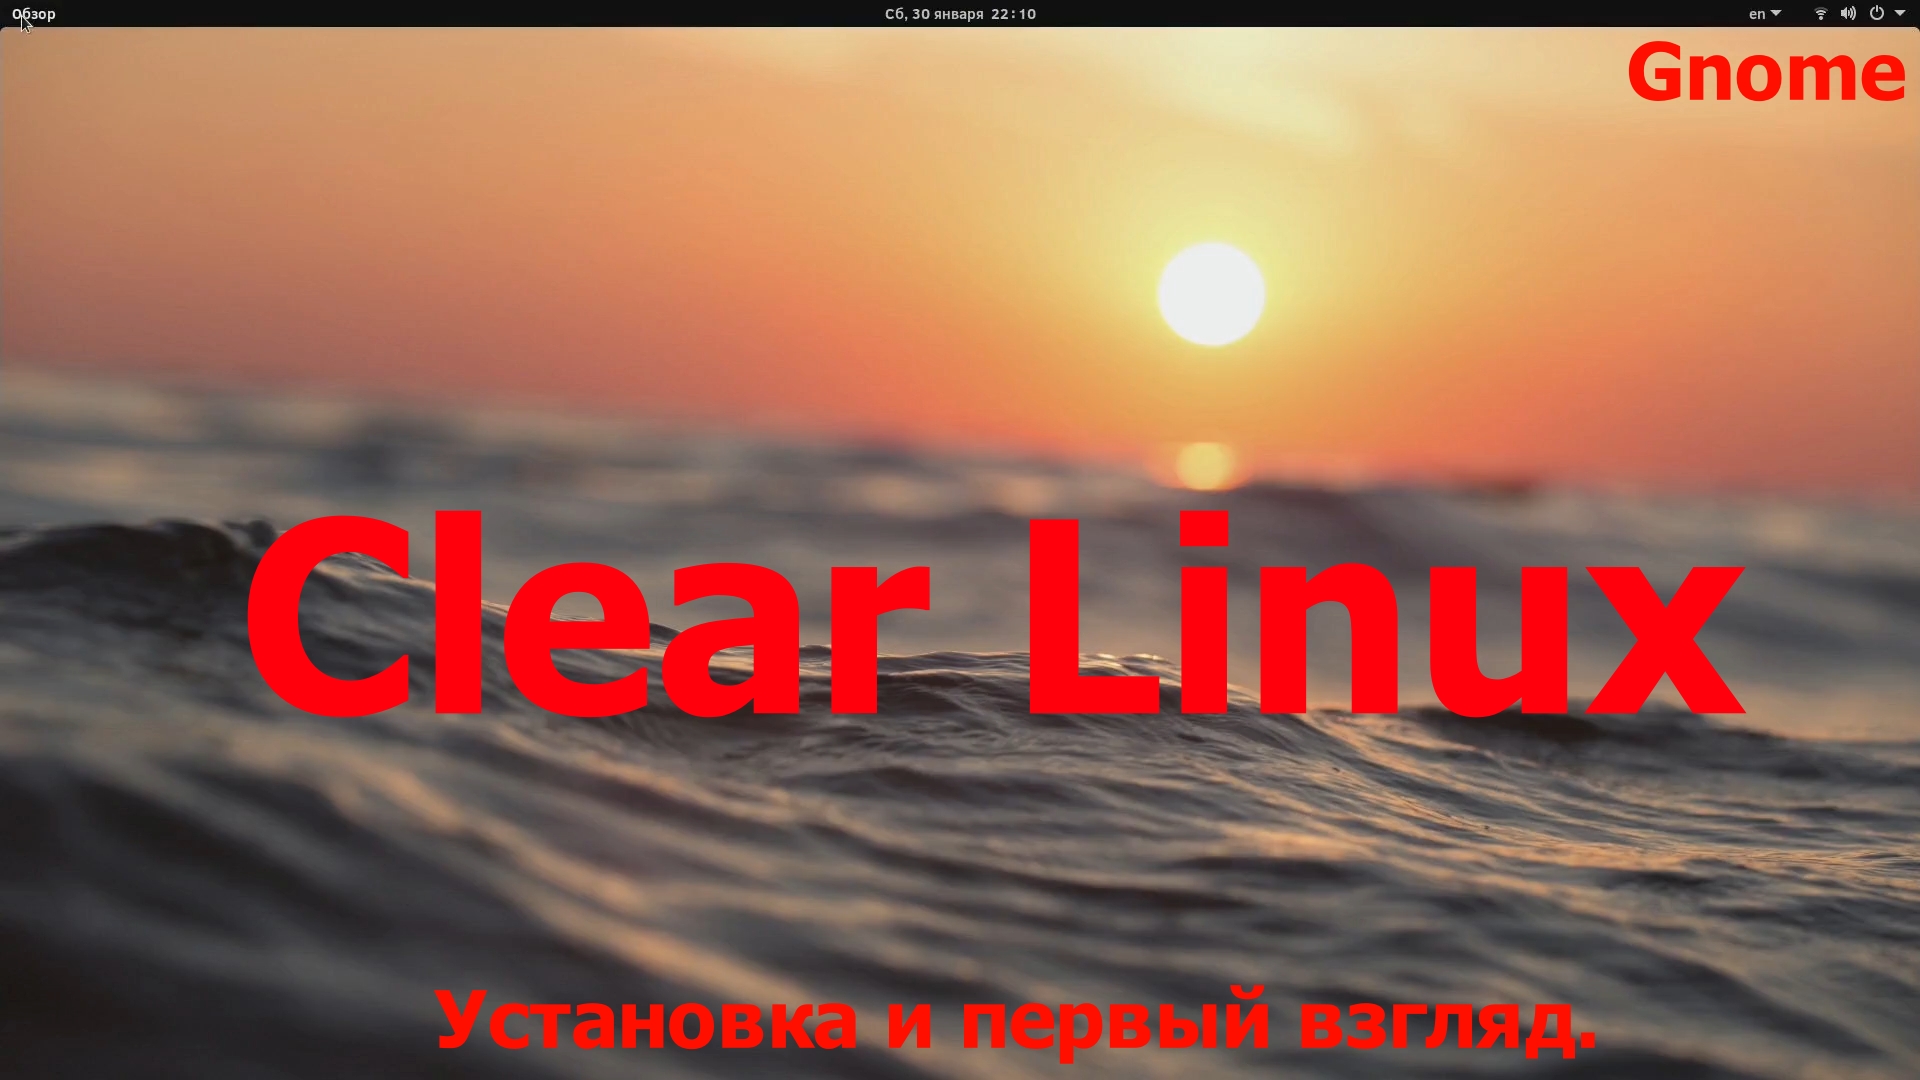 Дистрибутив Clear Linux (Gnome) (Установка и первый взгляд) (Январь 2021)